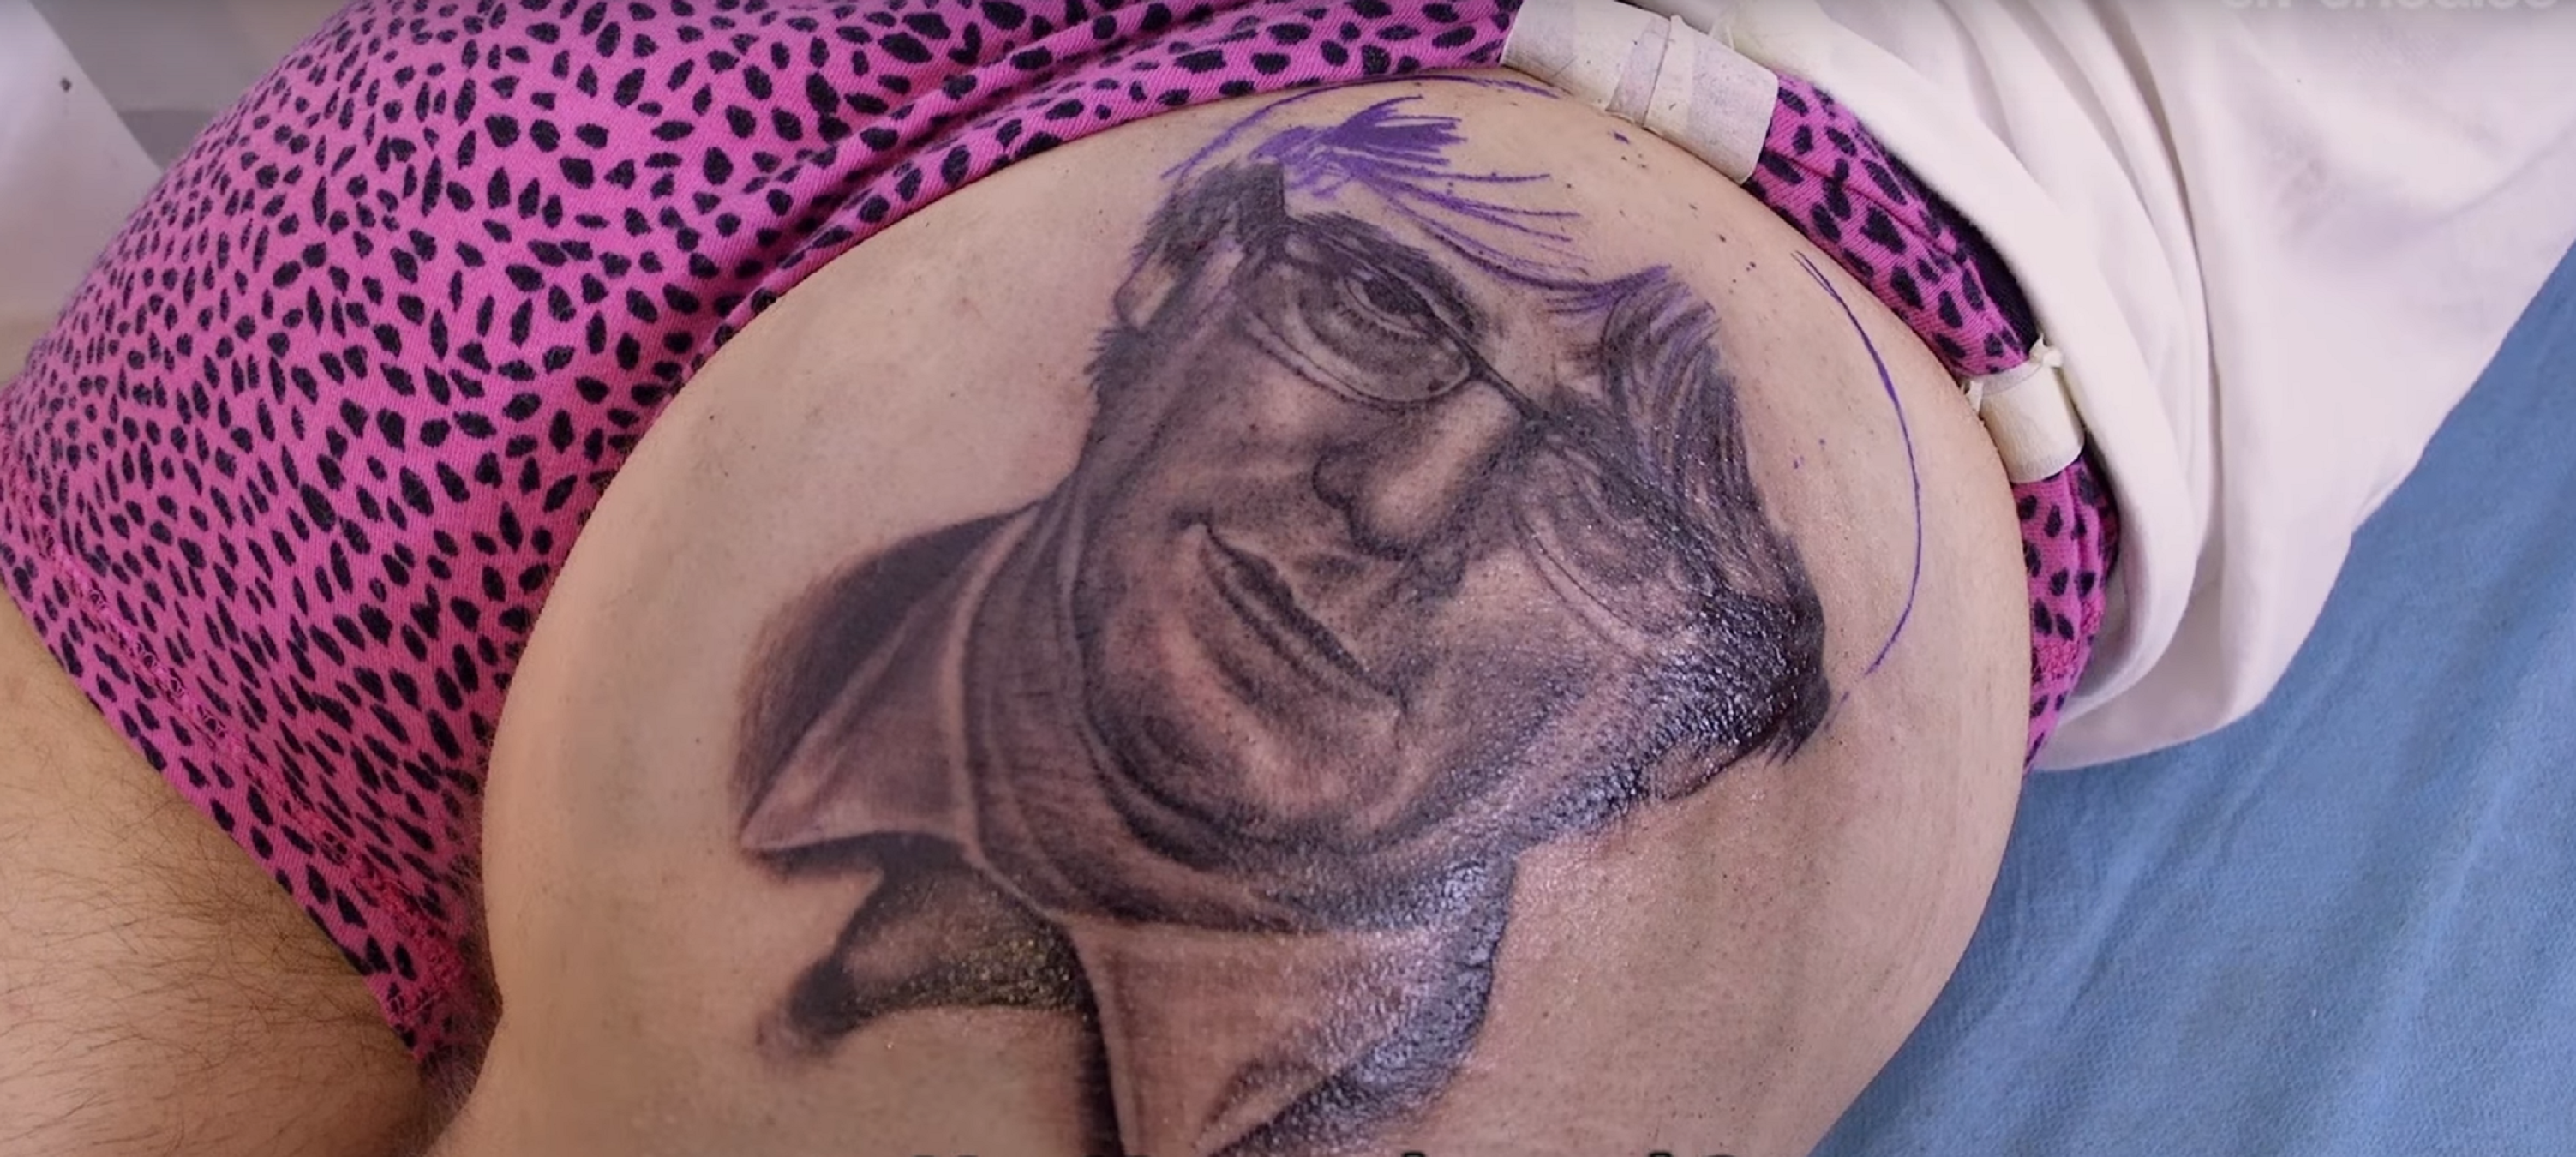 Se tatúa esta foto de Puigdemont de 'El Nacional' en su culo